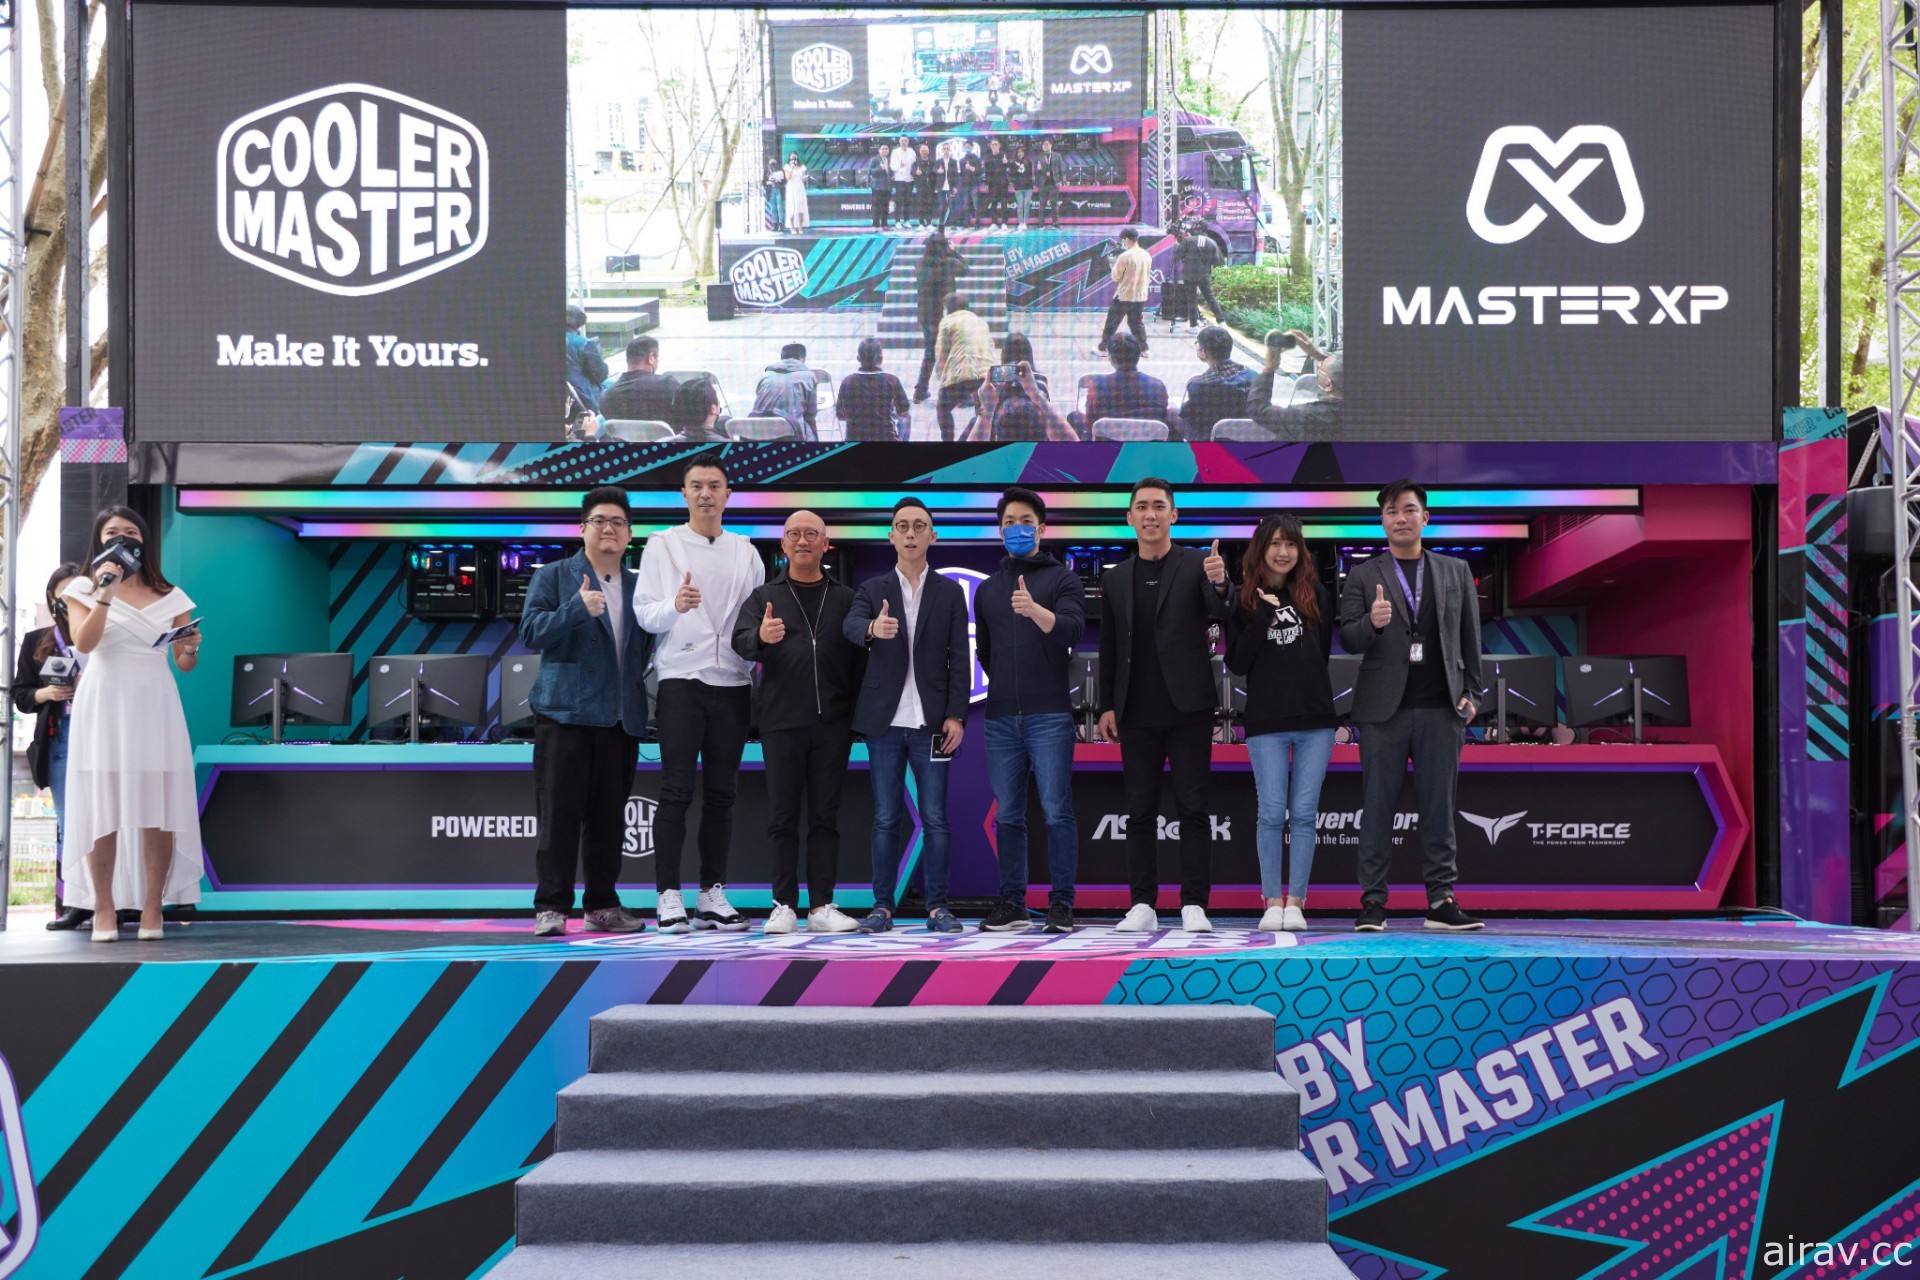 Cooler Master 打造沉浸式遊戲體驗專車「酷玩行者」 於全臺巡迴展出